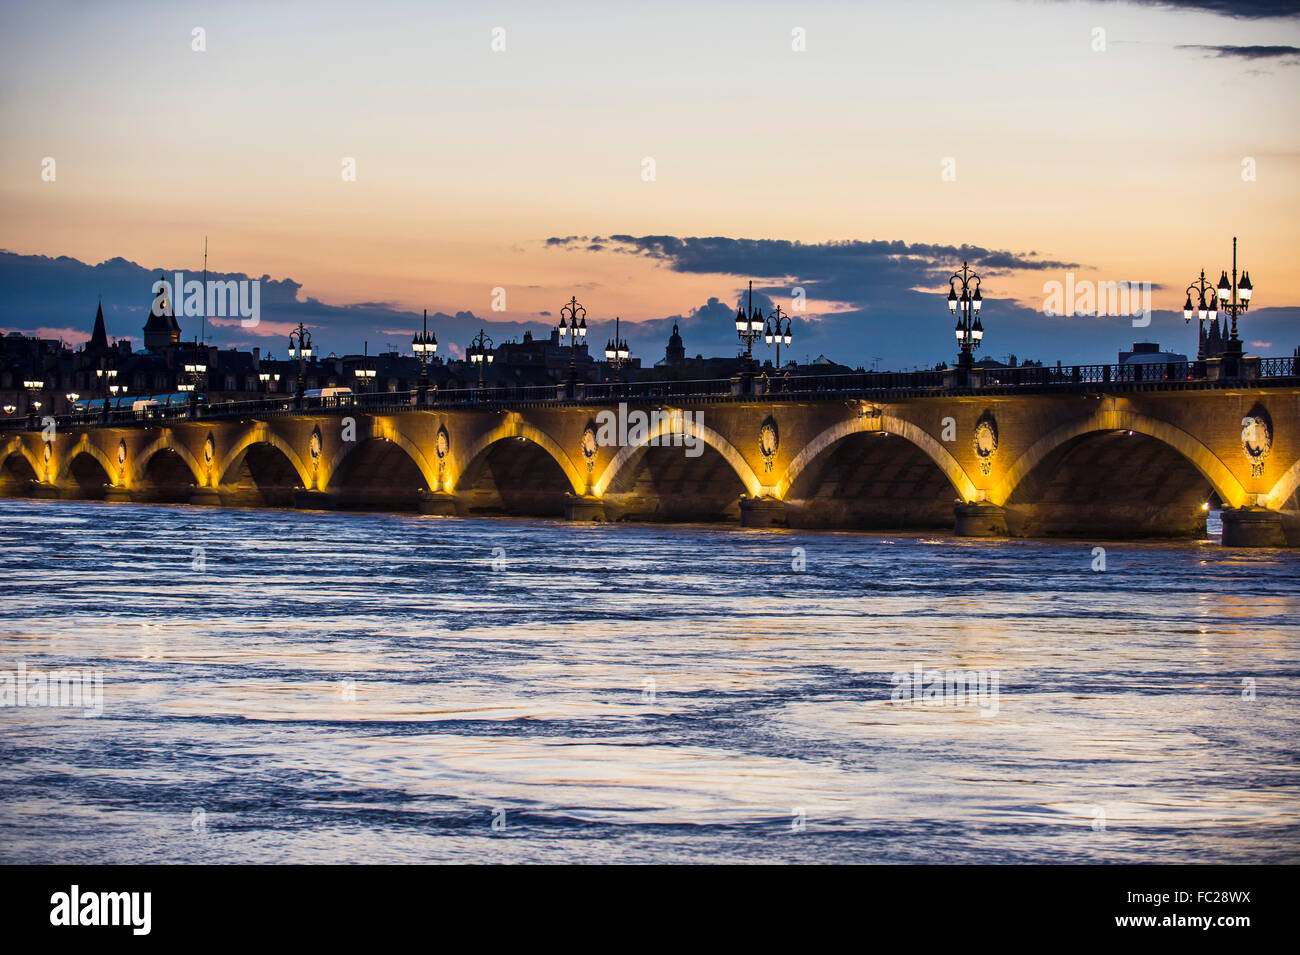 Pont de Pierre, historical bridge over the Garonne river at dusk, Bordeaux, France Stock Photo